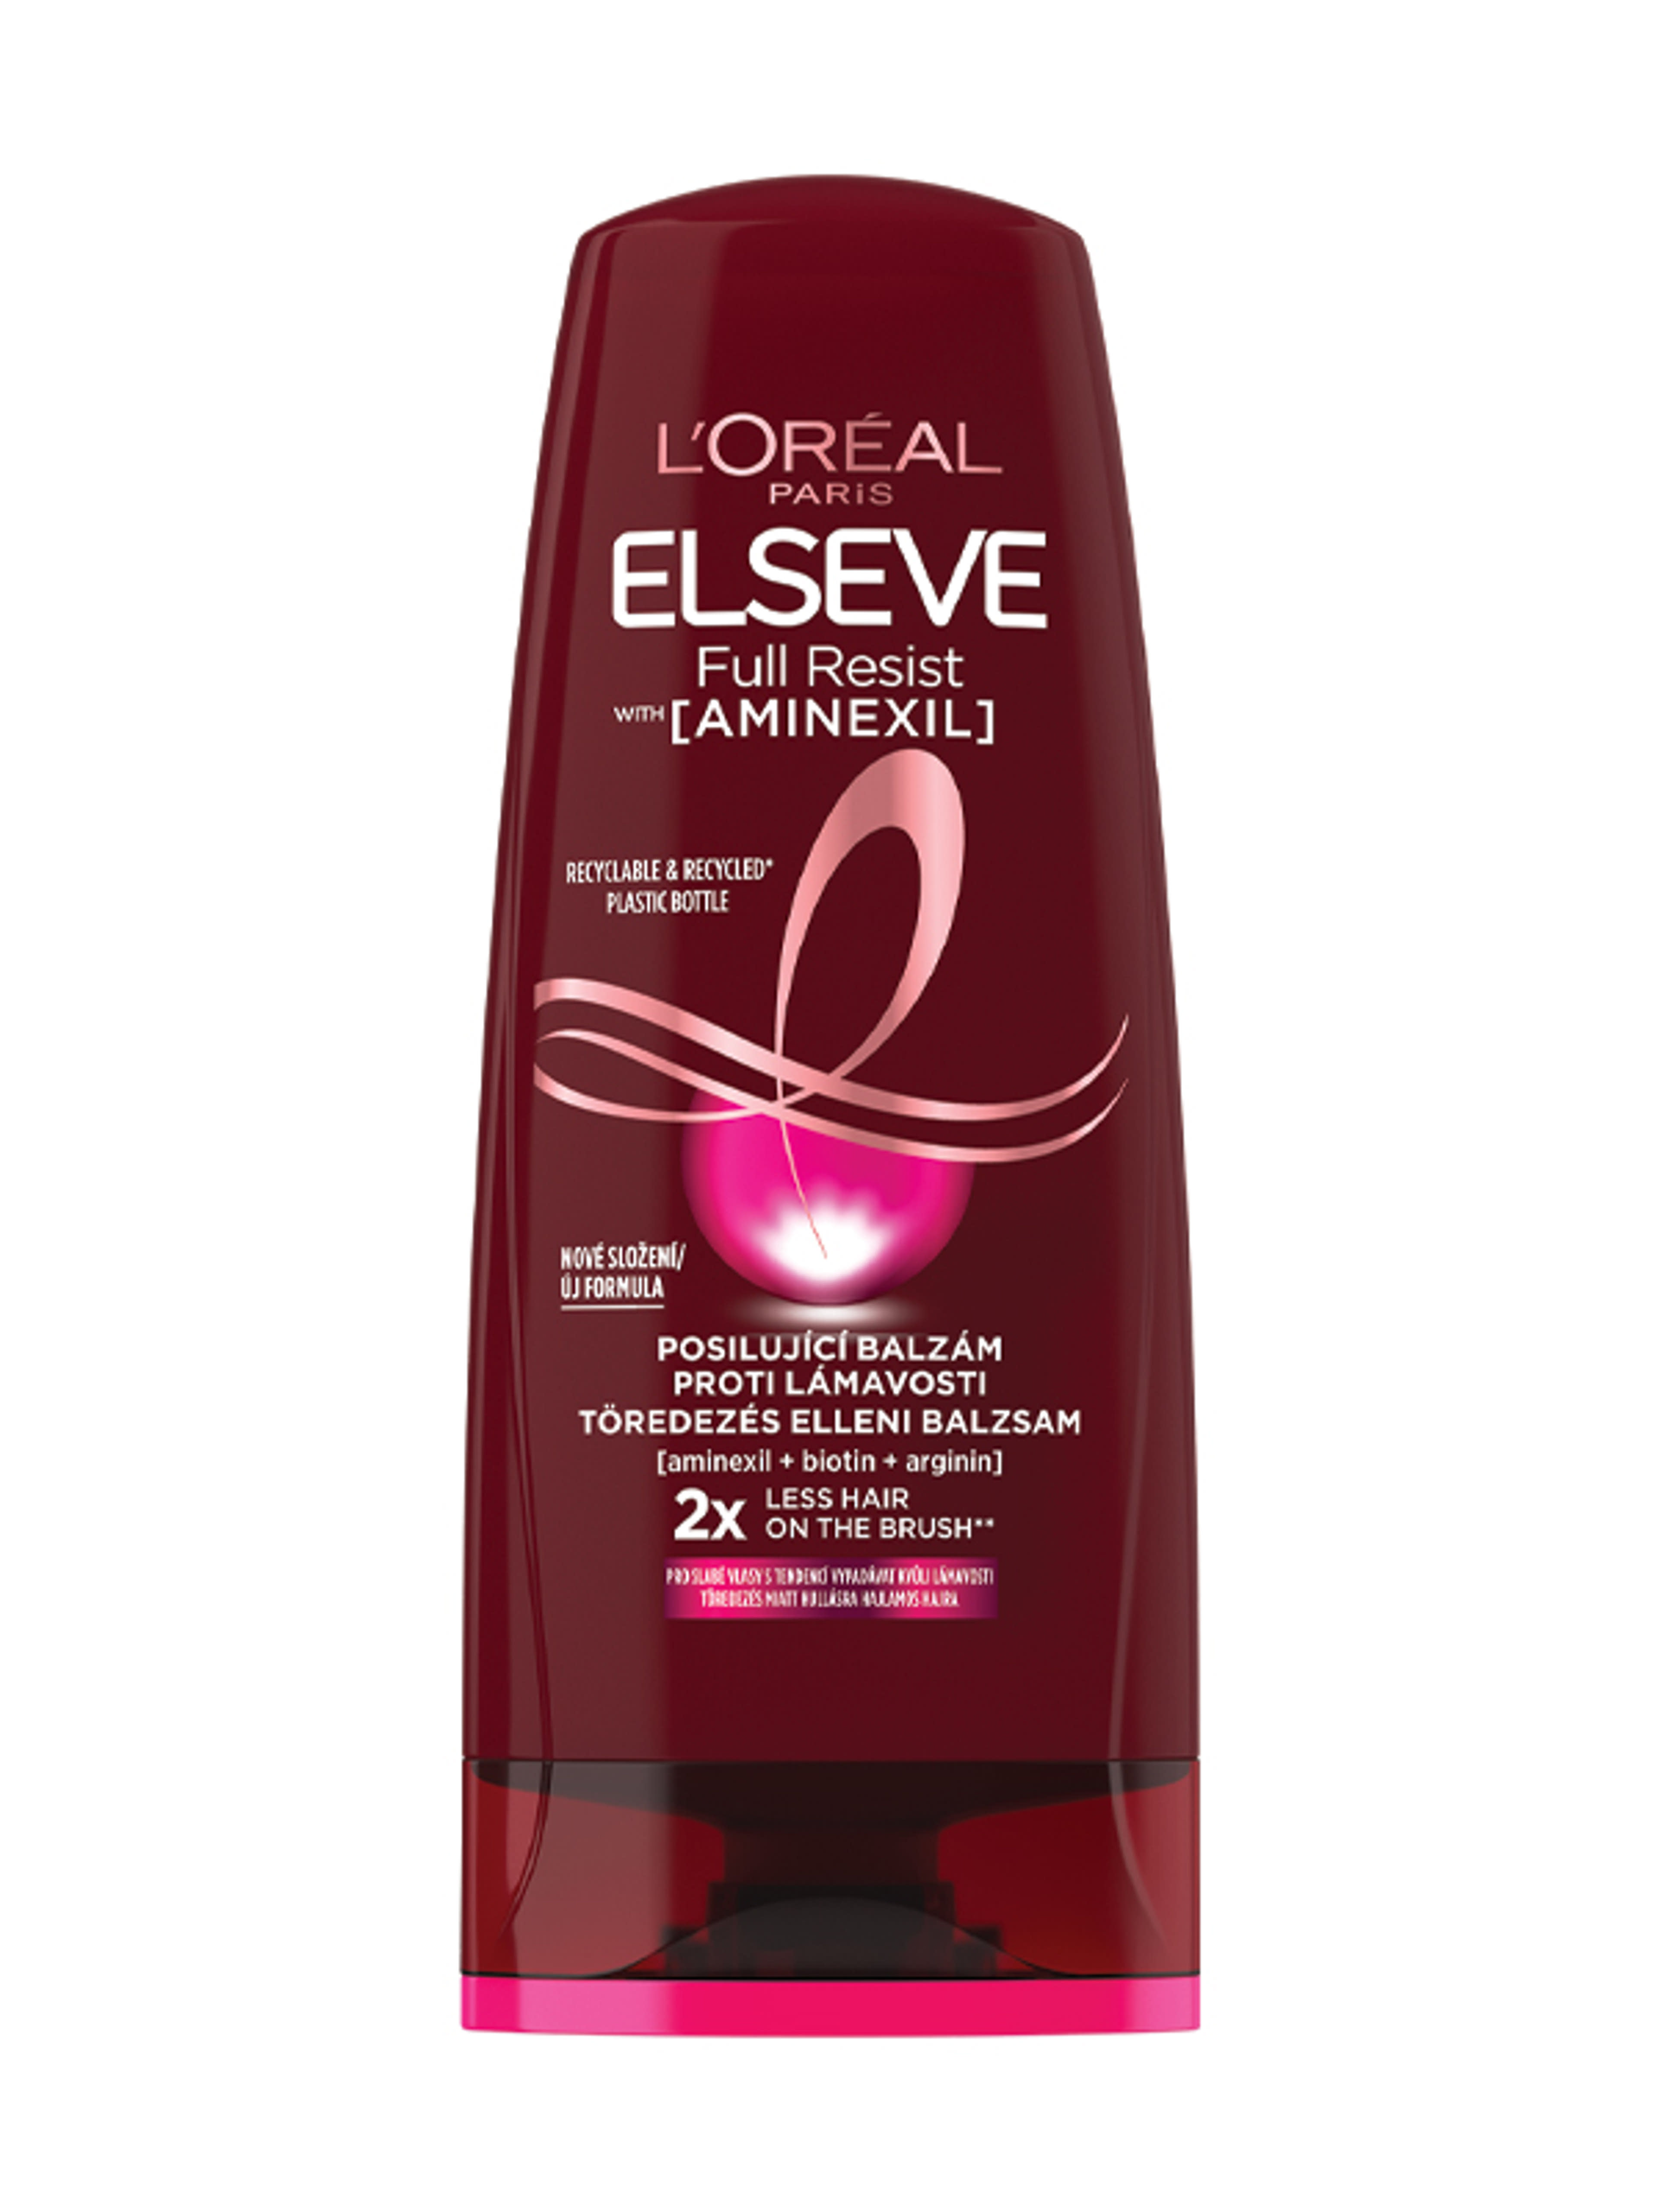 L'Oréal Paris Elseve Full Resist hajerősítő balzsam gyenge, hullásra hajlamos hajra - 200 ml-2